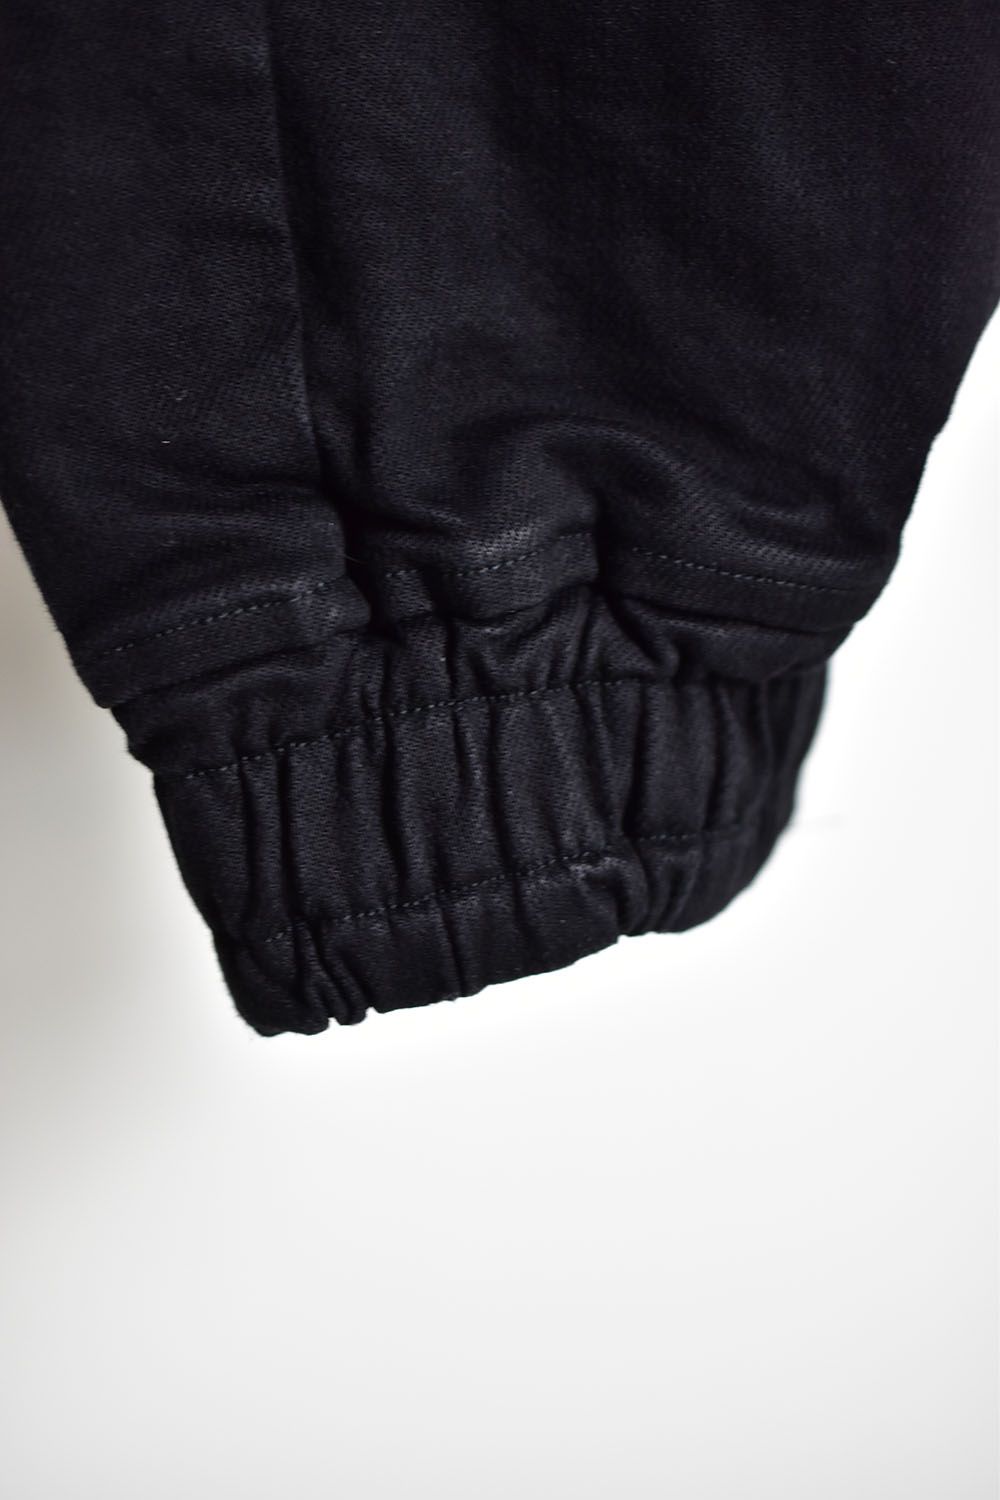 Sarouel Denim Pants"Black"/サルエルデニムパンツ"ブラック"